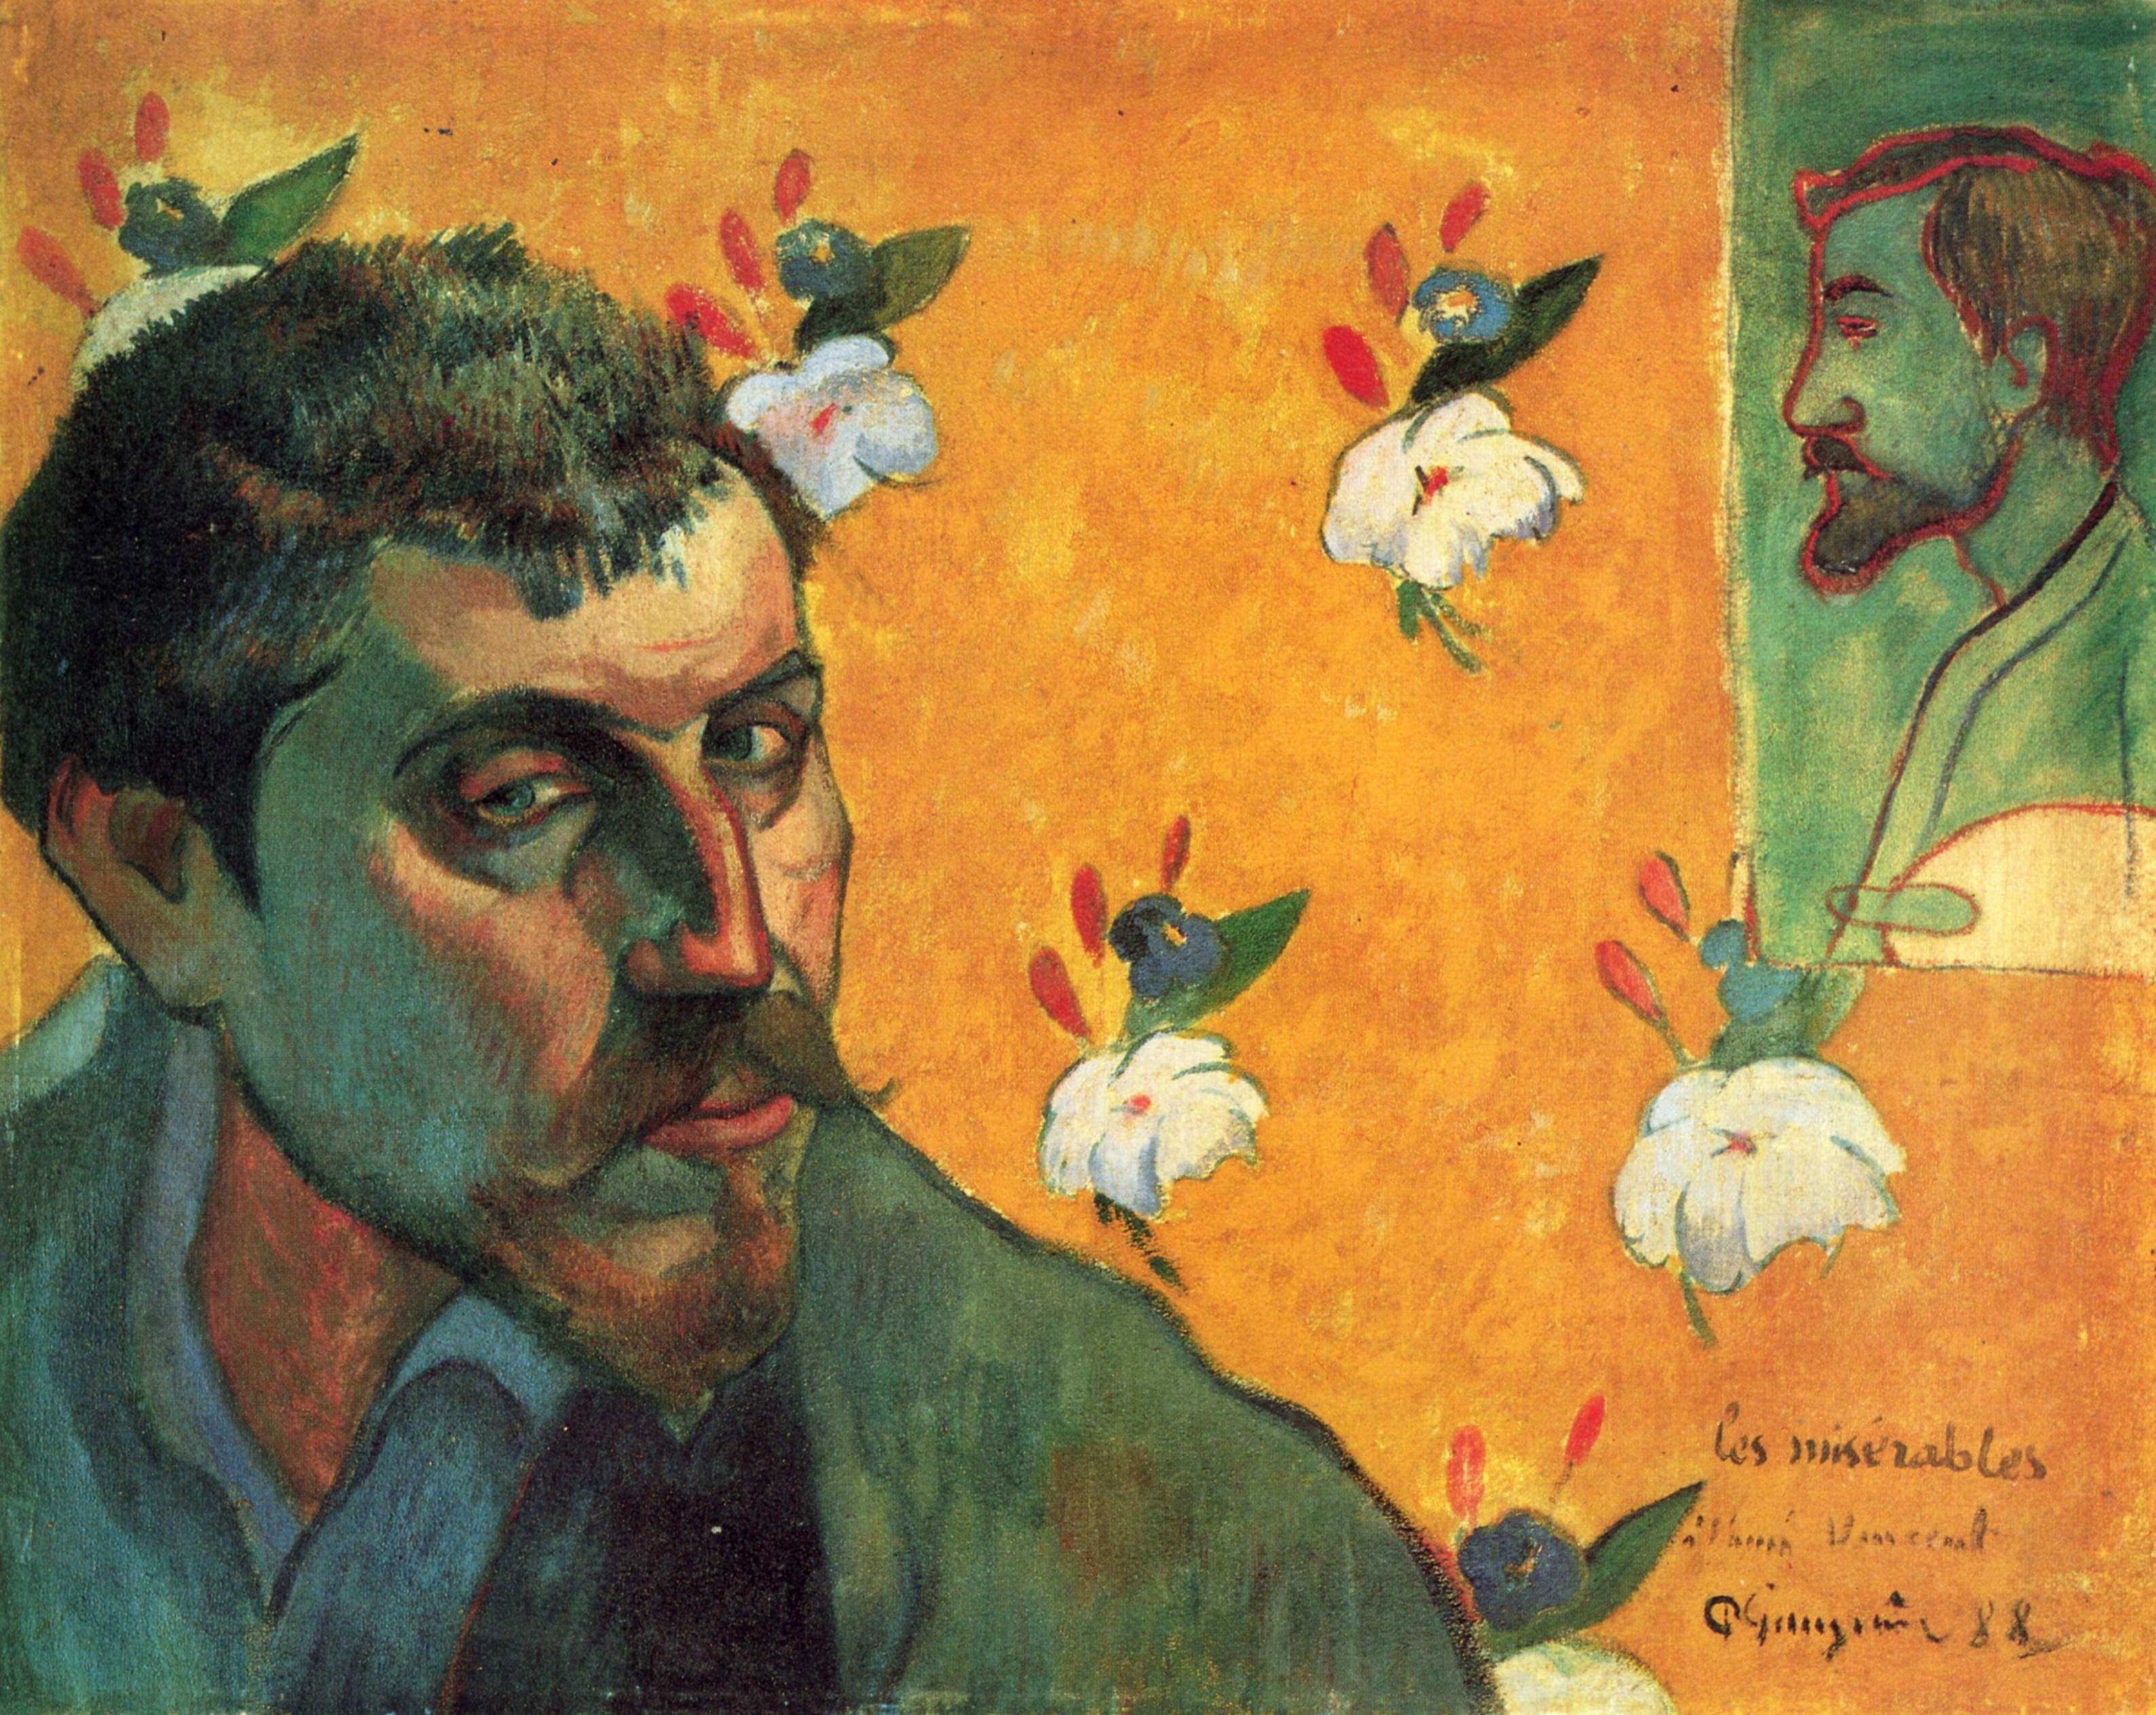 Autoportret cu Émile Bernard by Paul Gauguin - 1888 - 45 × 55 cm 